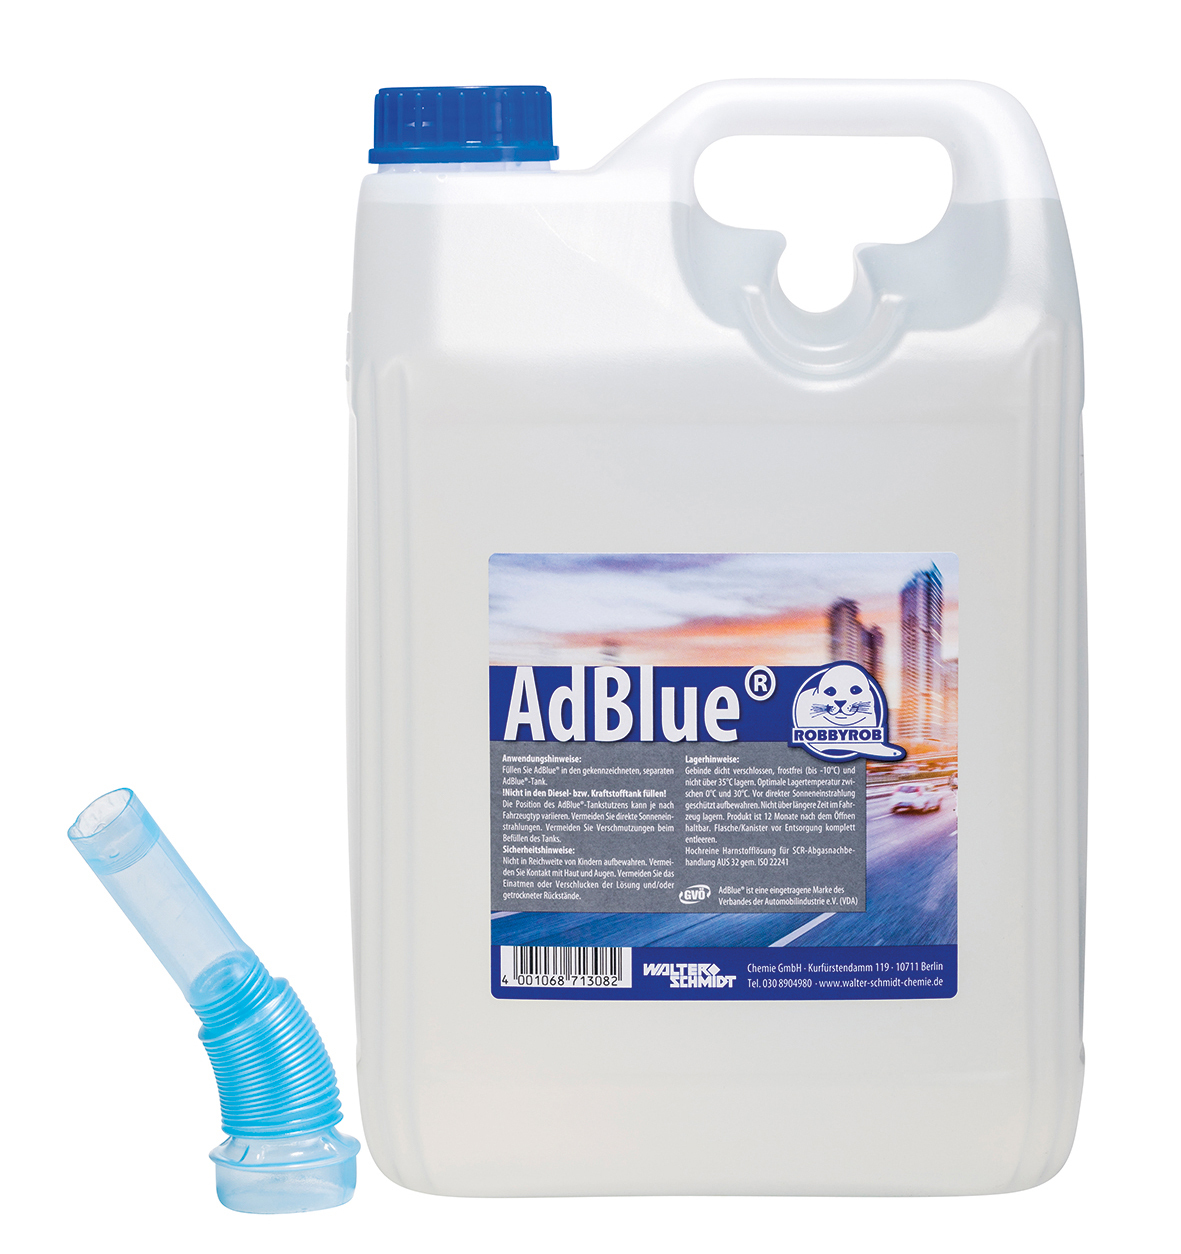 20 L-Kanister AdBlue® hochwertig, für Dieselfahrzeuge